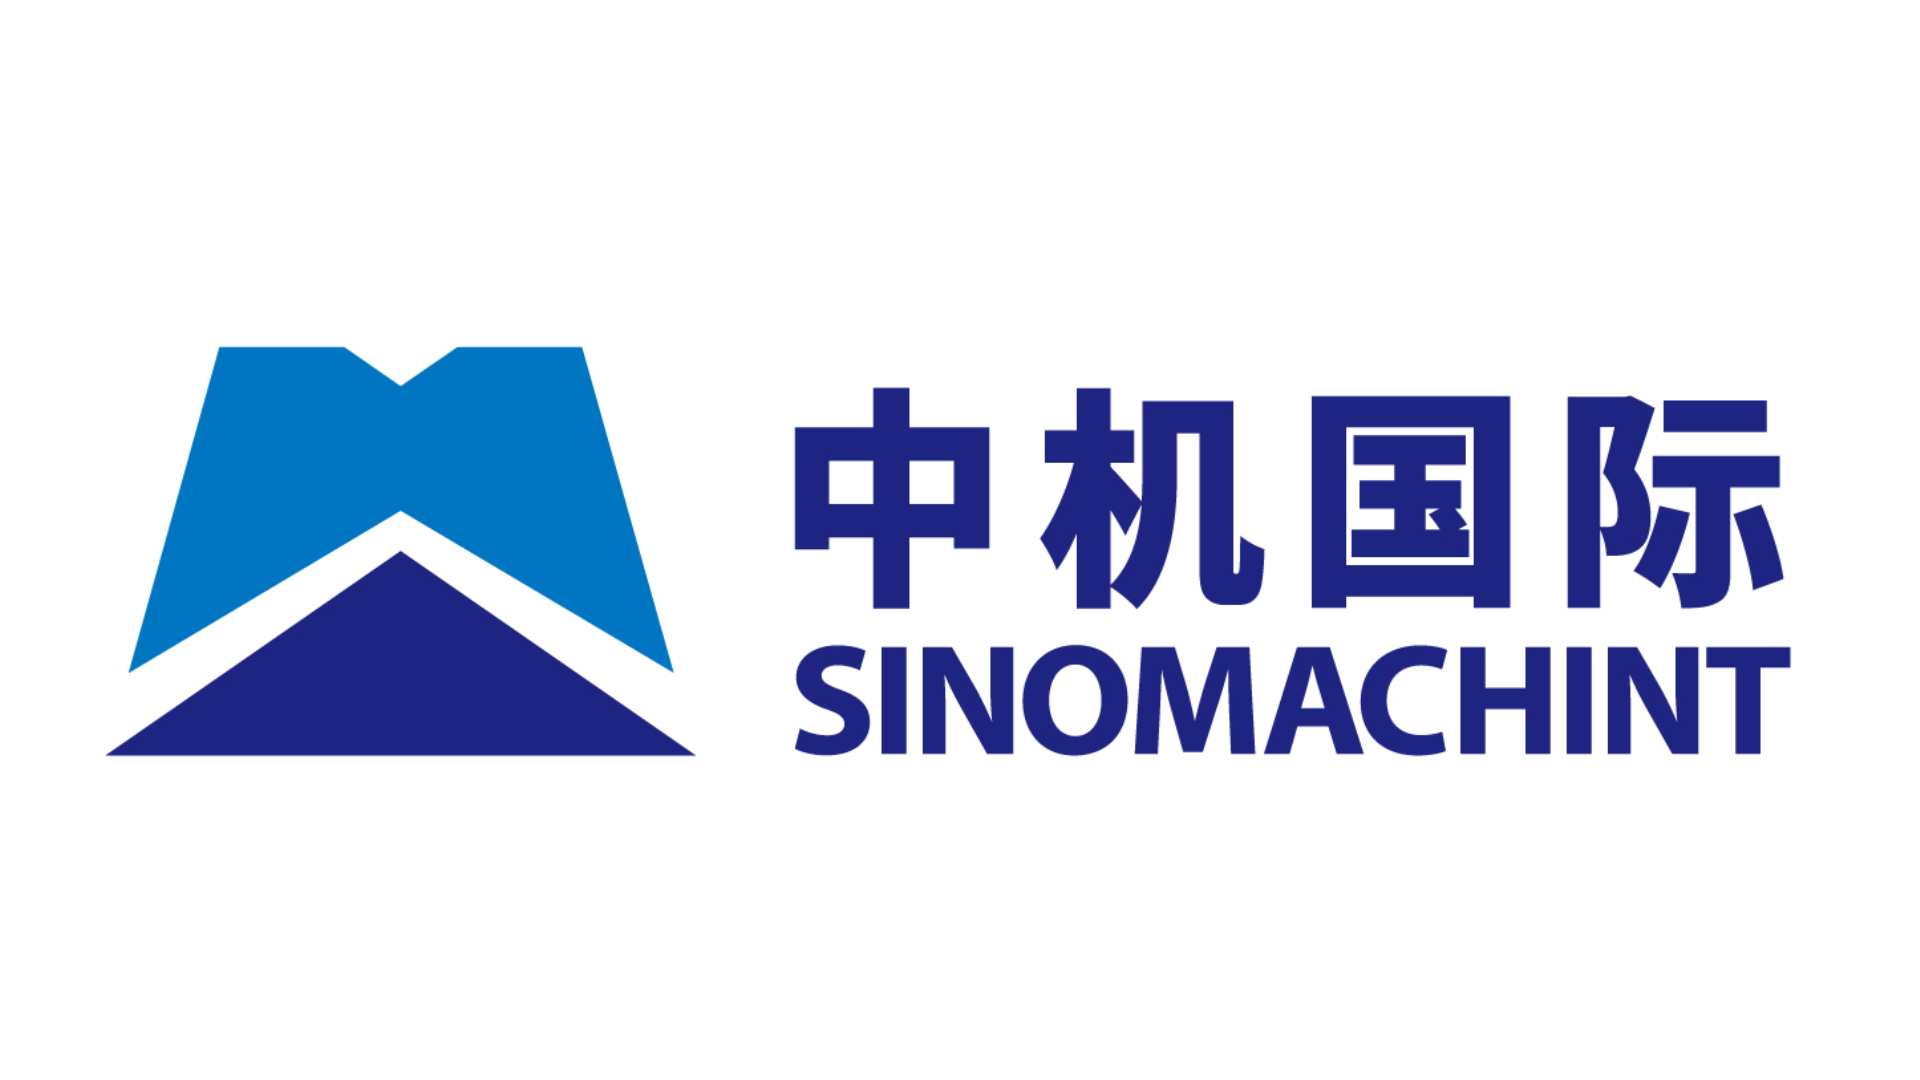 China National Machinery Industry International Co Ltd (SINOMACHINT)